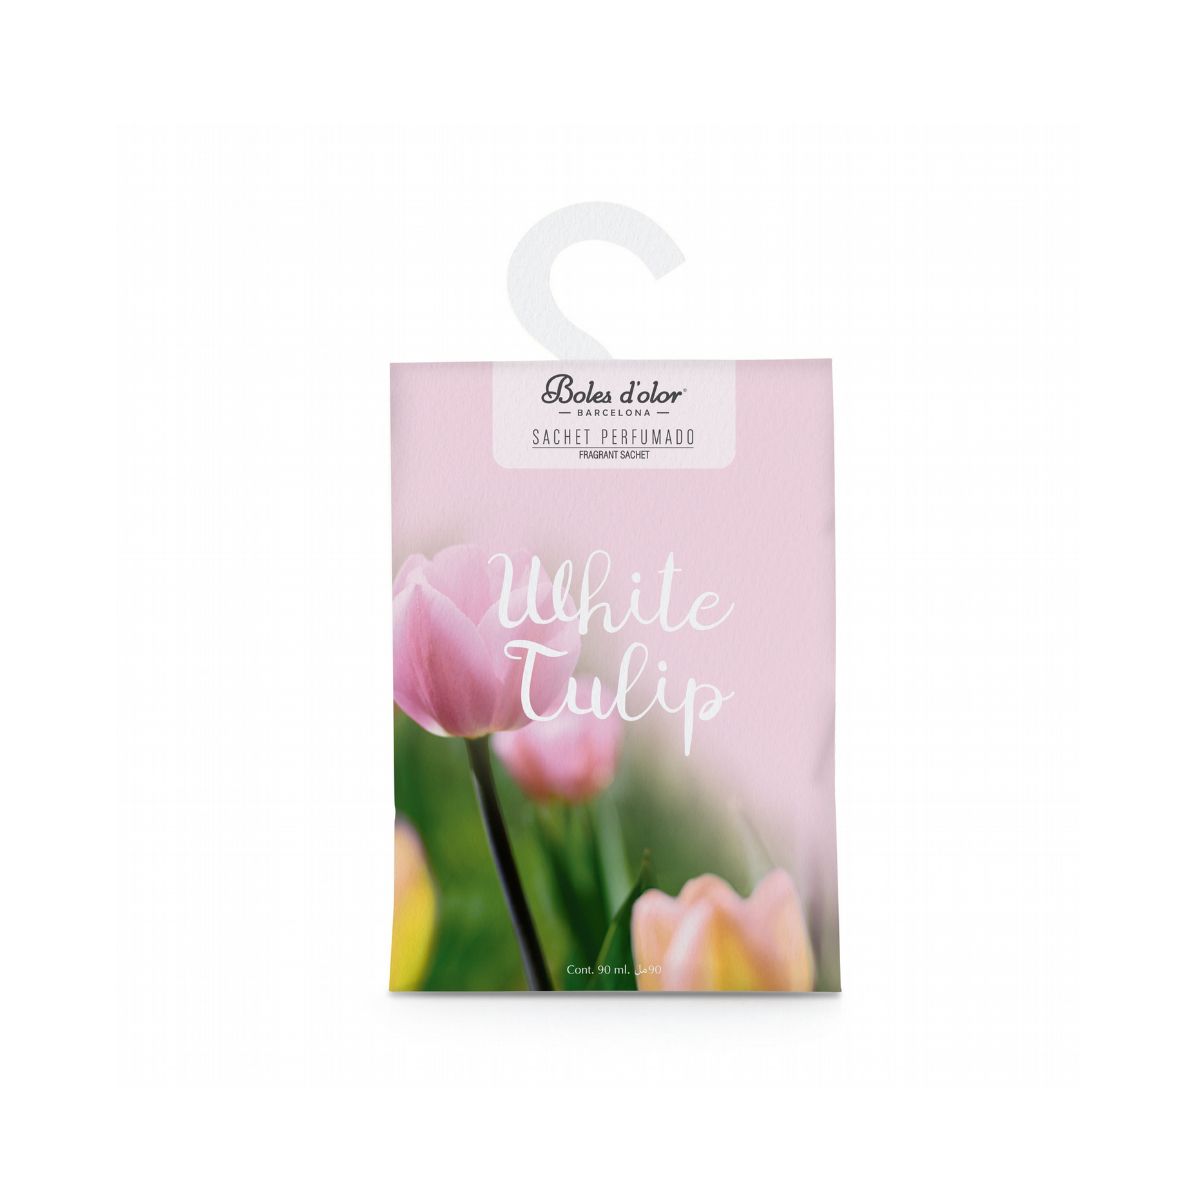 Cruzeta Perfumada White Tulip Boles d'olor